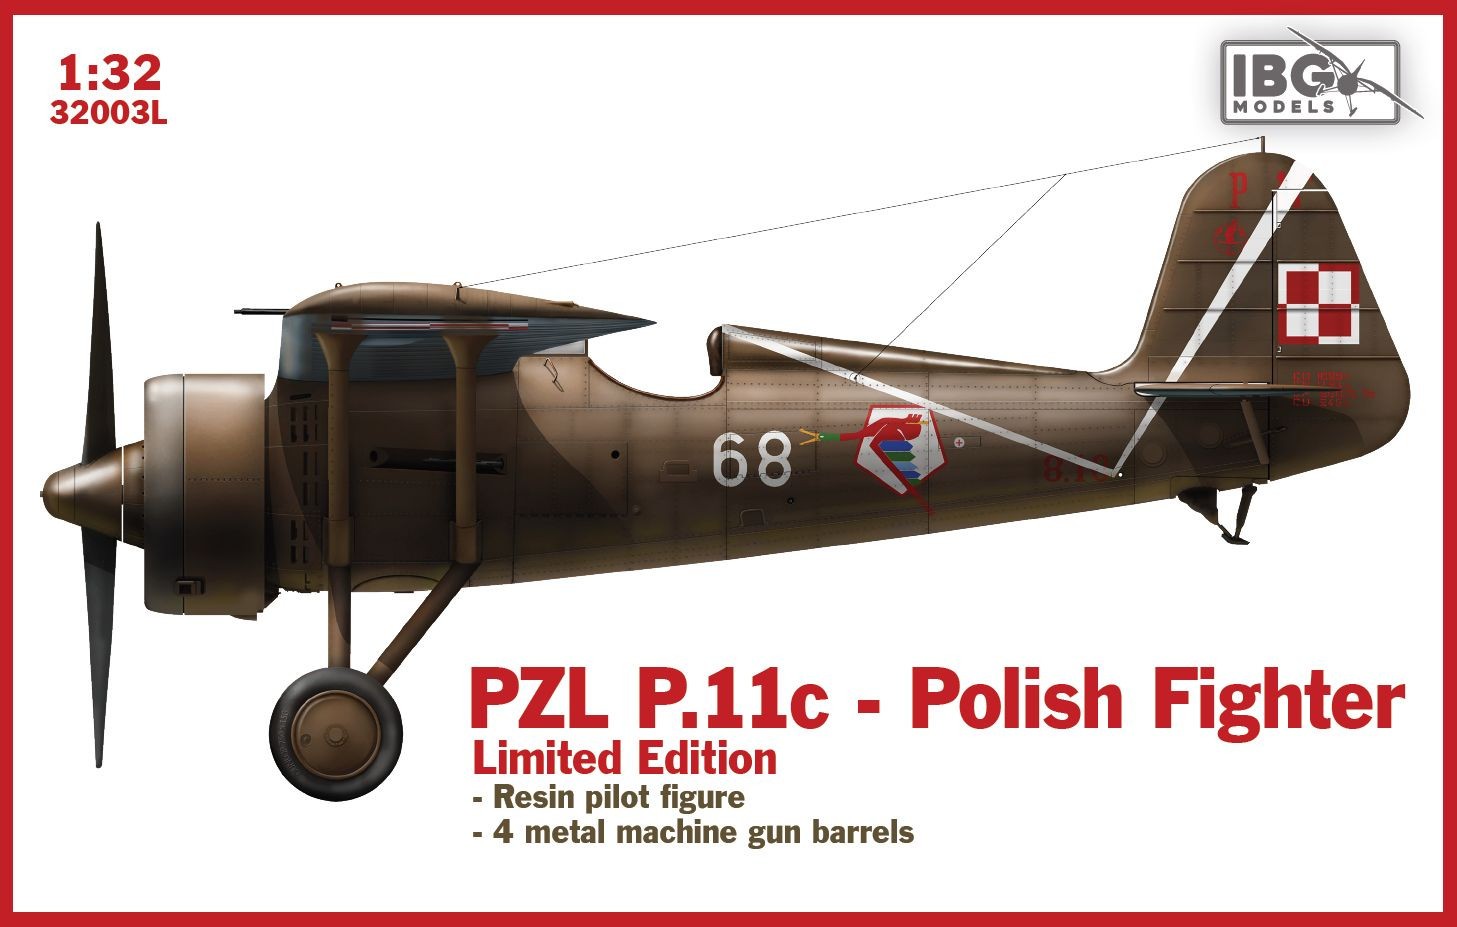 Maquette IBG PZL P.11c Polish Fighter - ÉDITION LIMITÉE Quelques faits